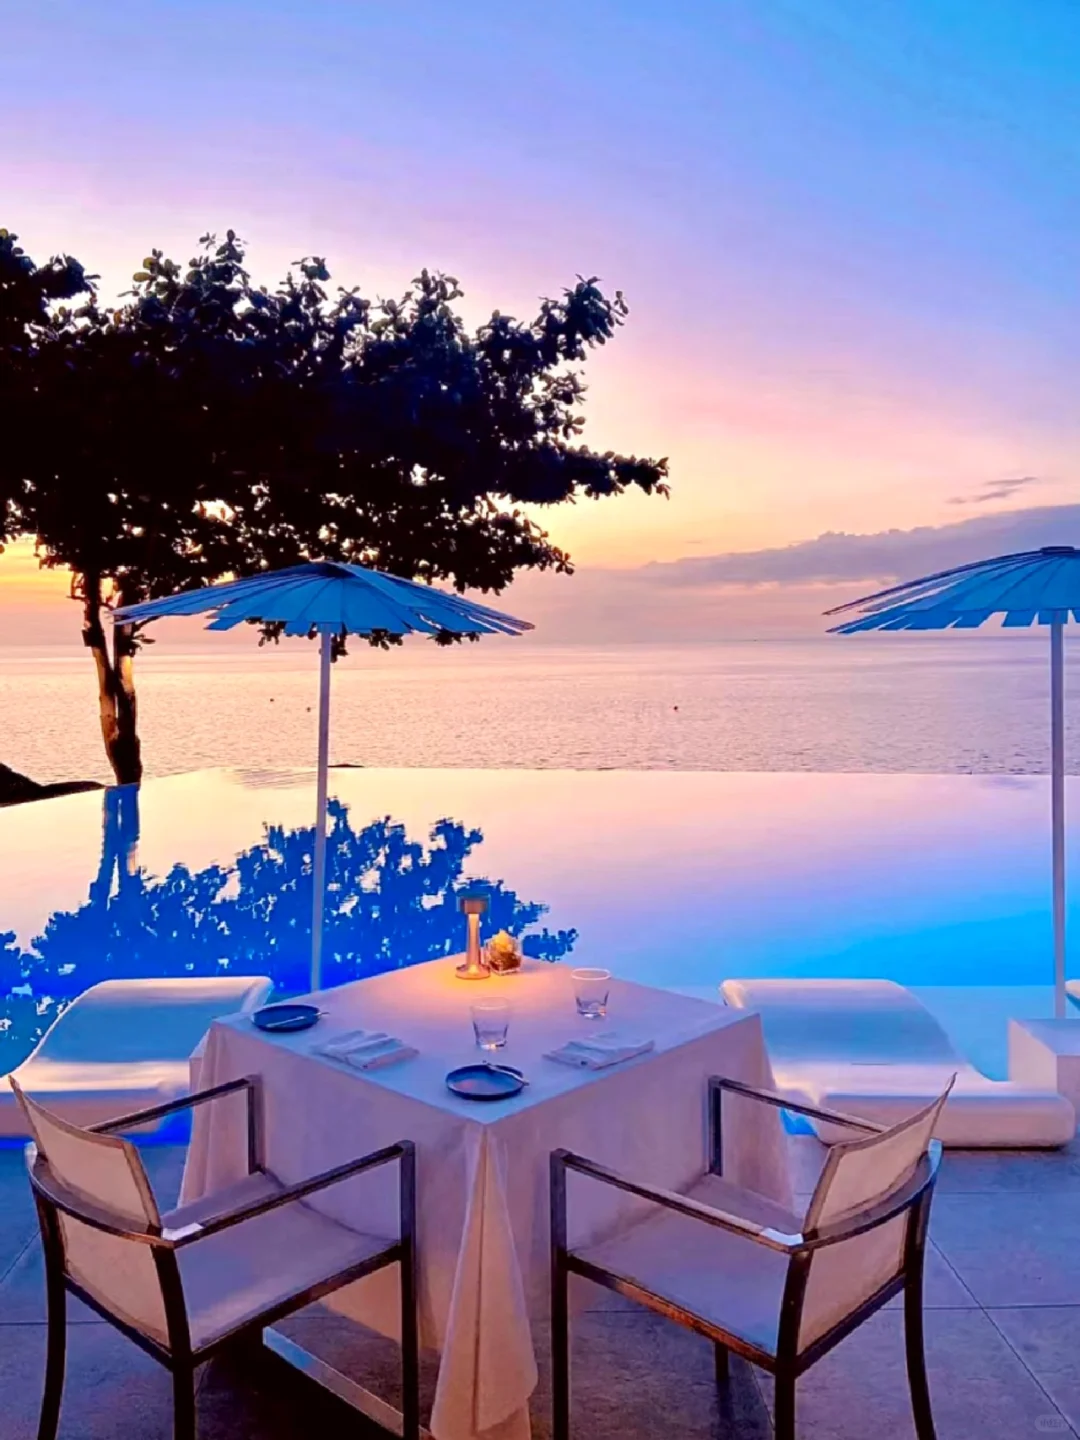 Phuket-Kata Rocks Resort & Residences, the same hotel as Wang Jiaer in Phuket, has a beautiful sunset view